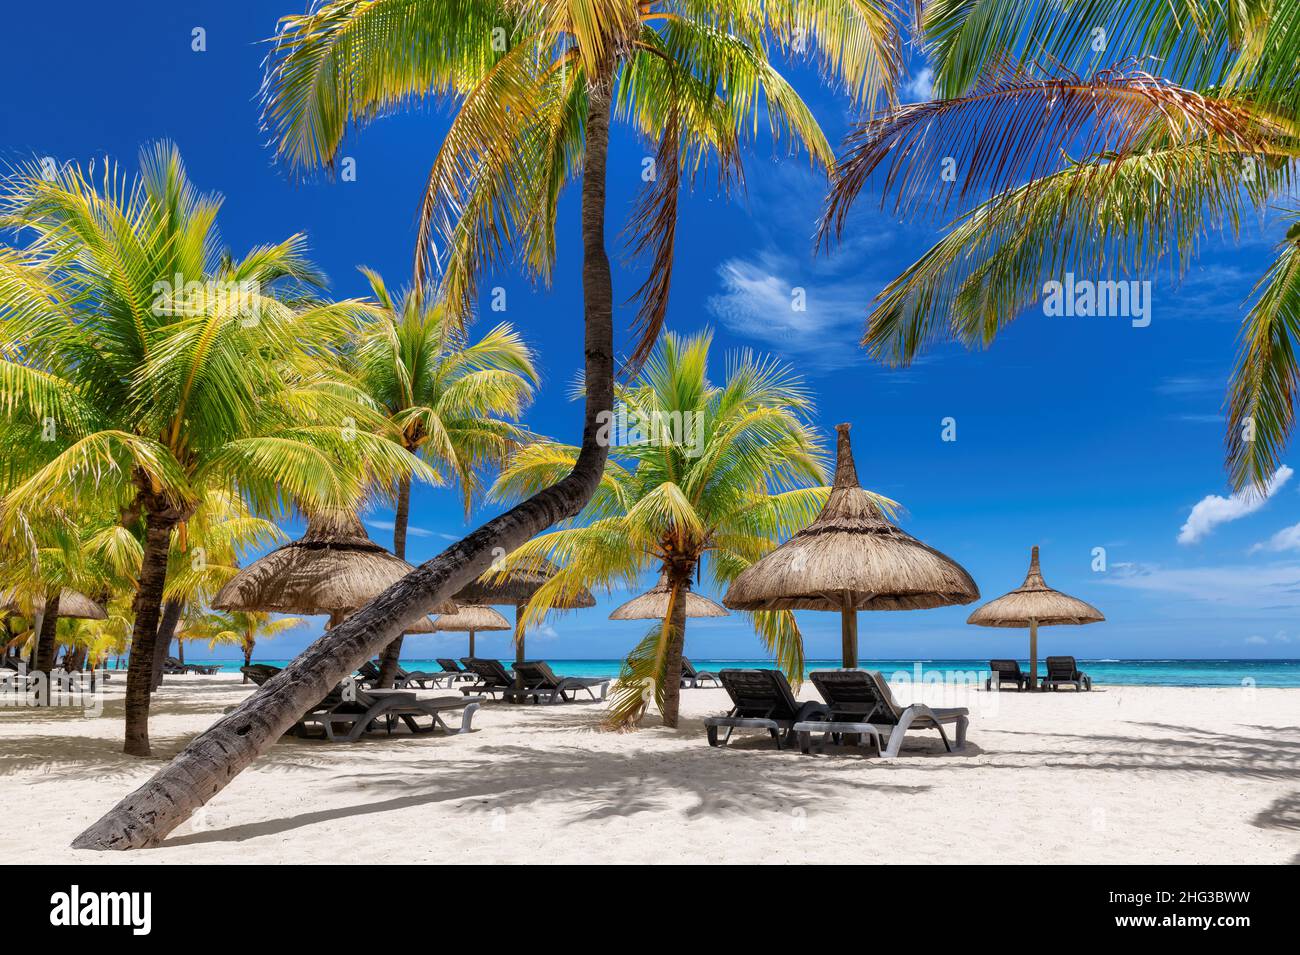 Palmiers dans une station balnéaire tropicale ensoleillée sur l'île Maurice. Banque D'Images